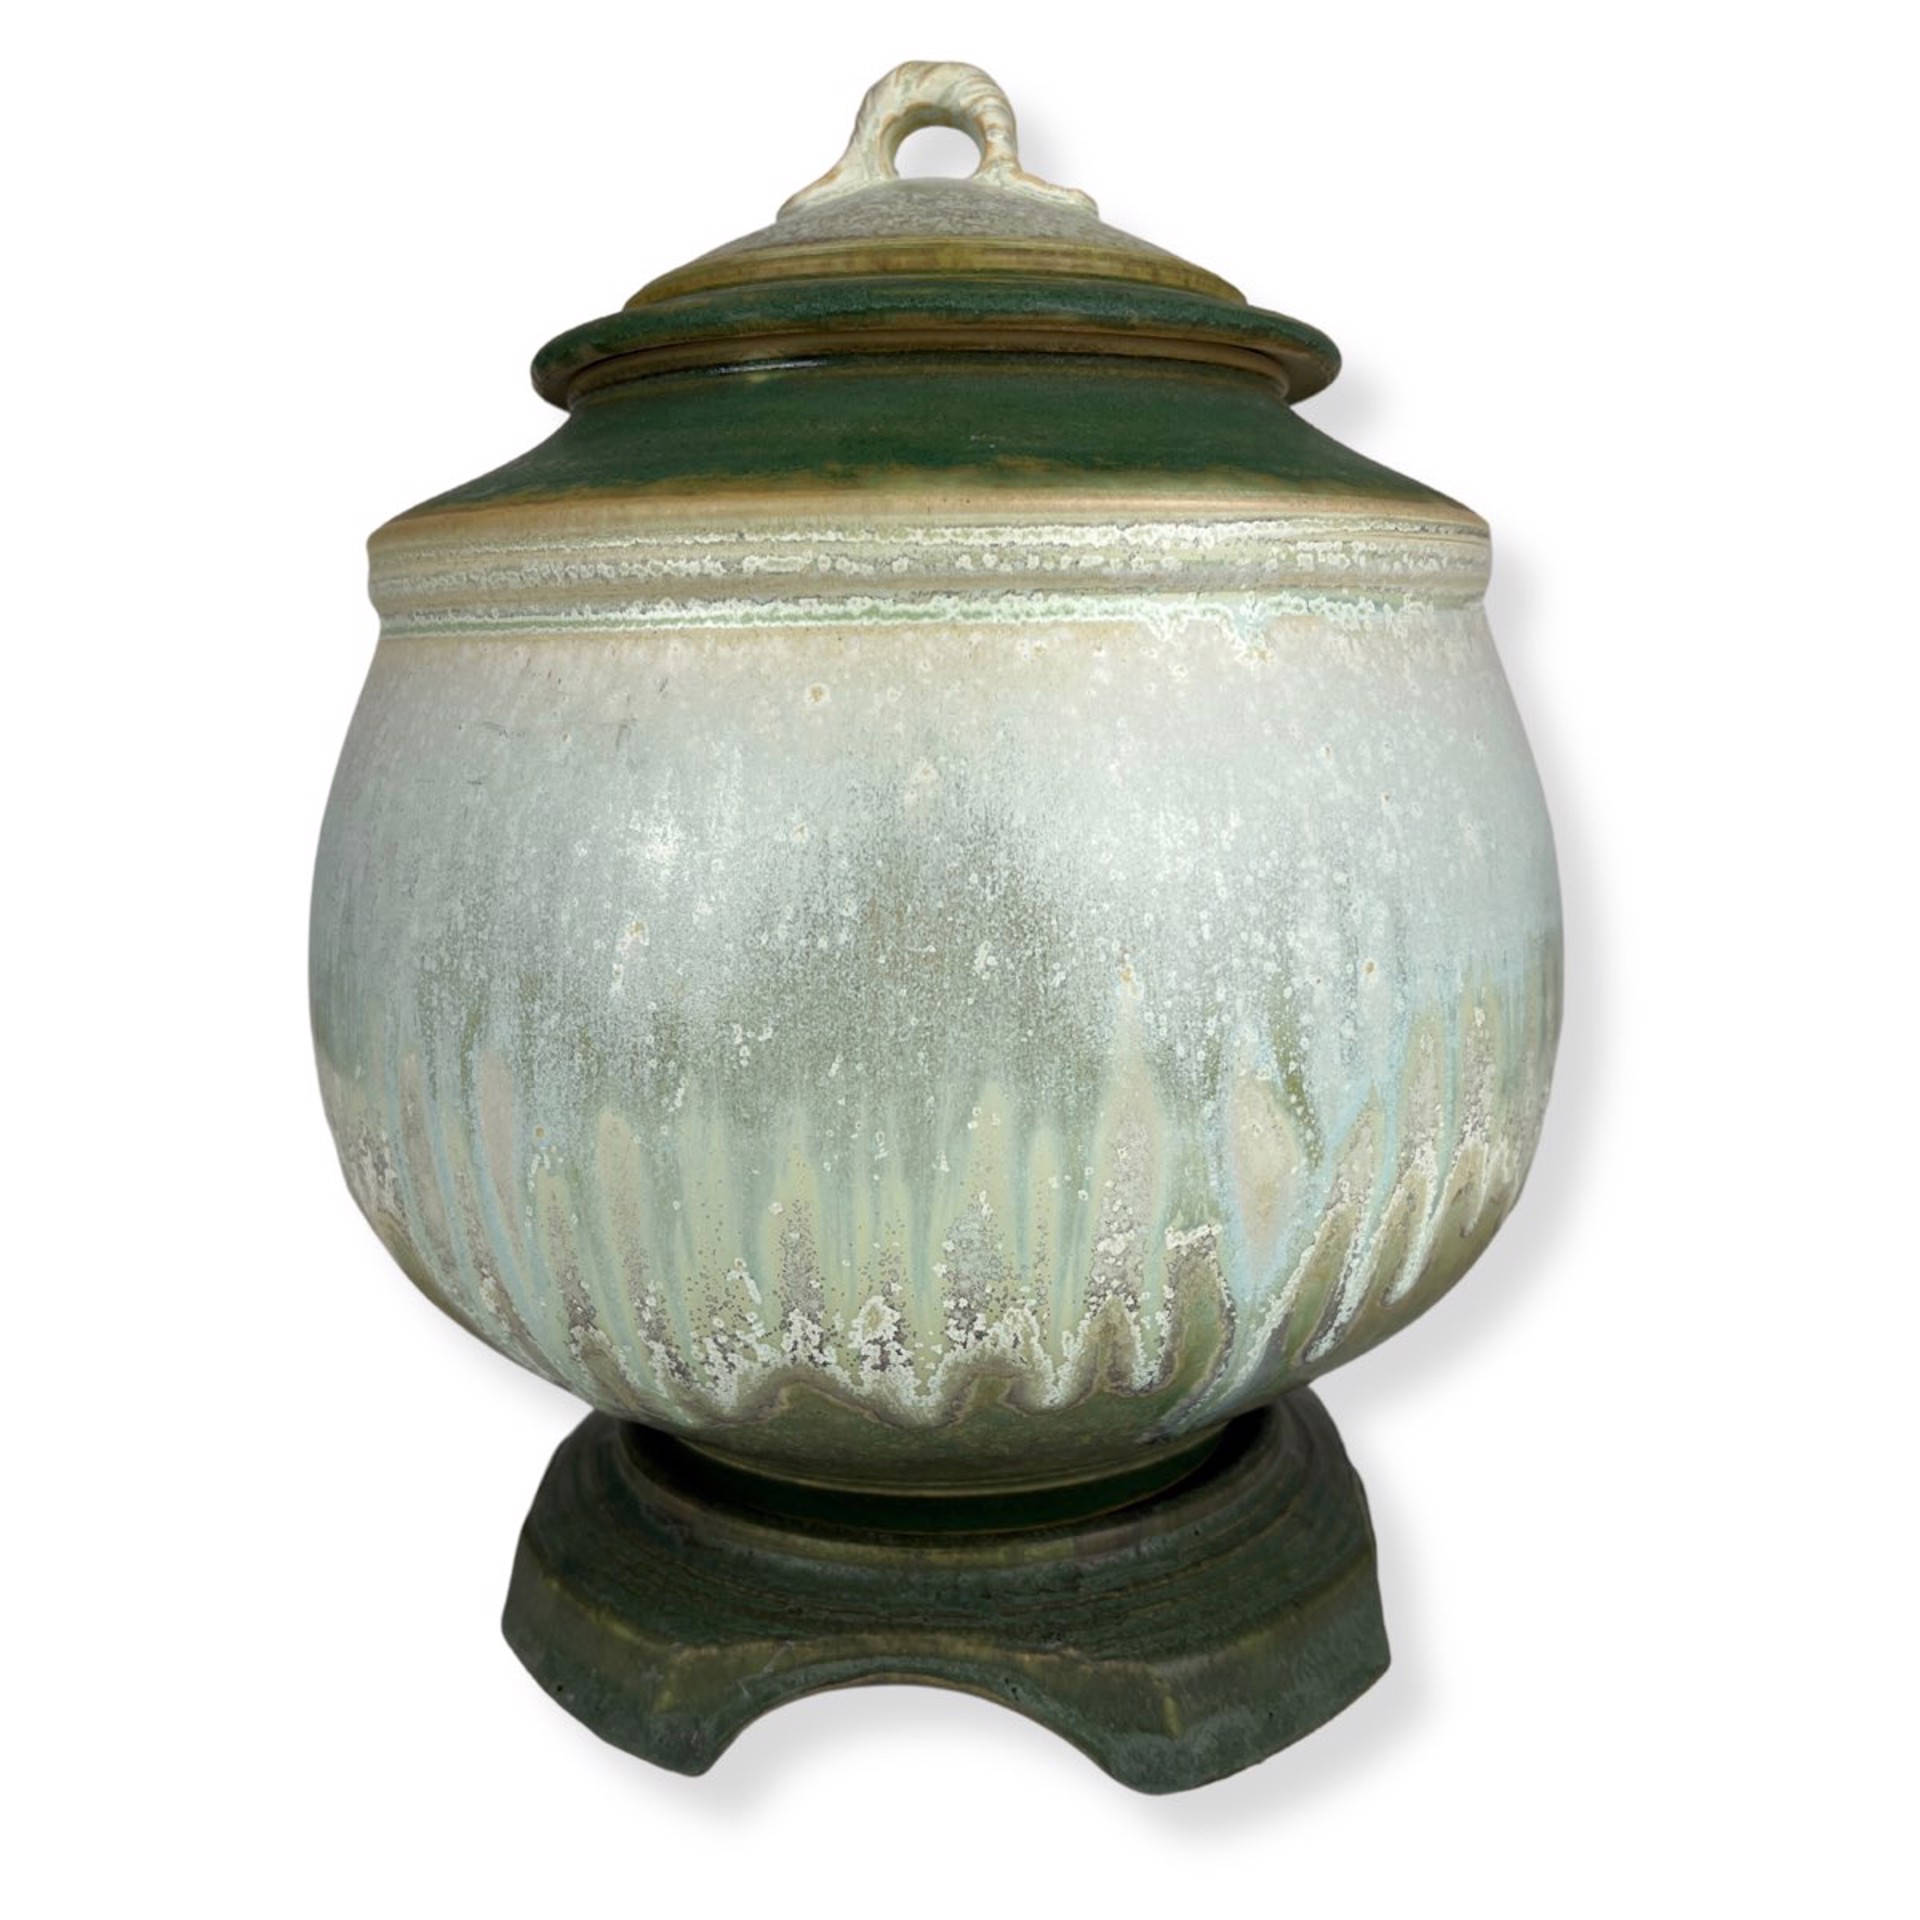 Lidded Jar with Pedestal by Richard Aerni